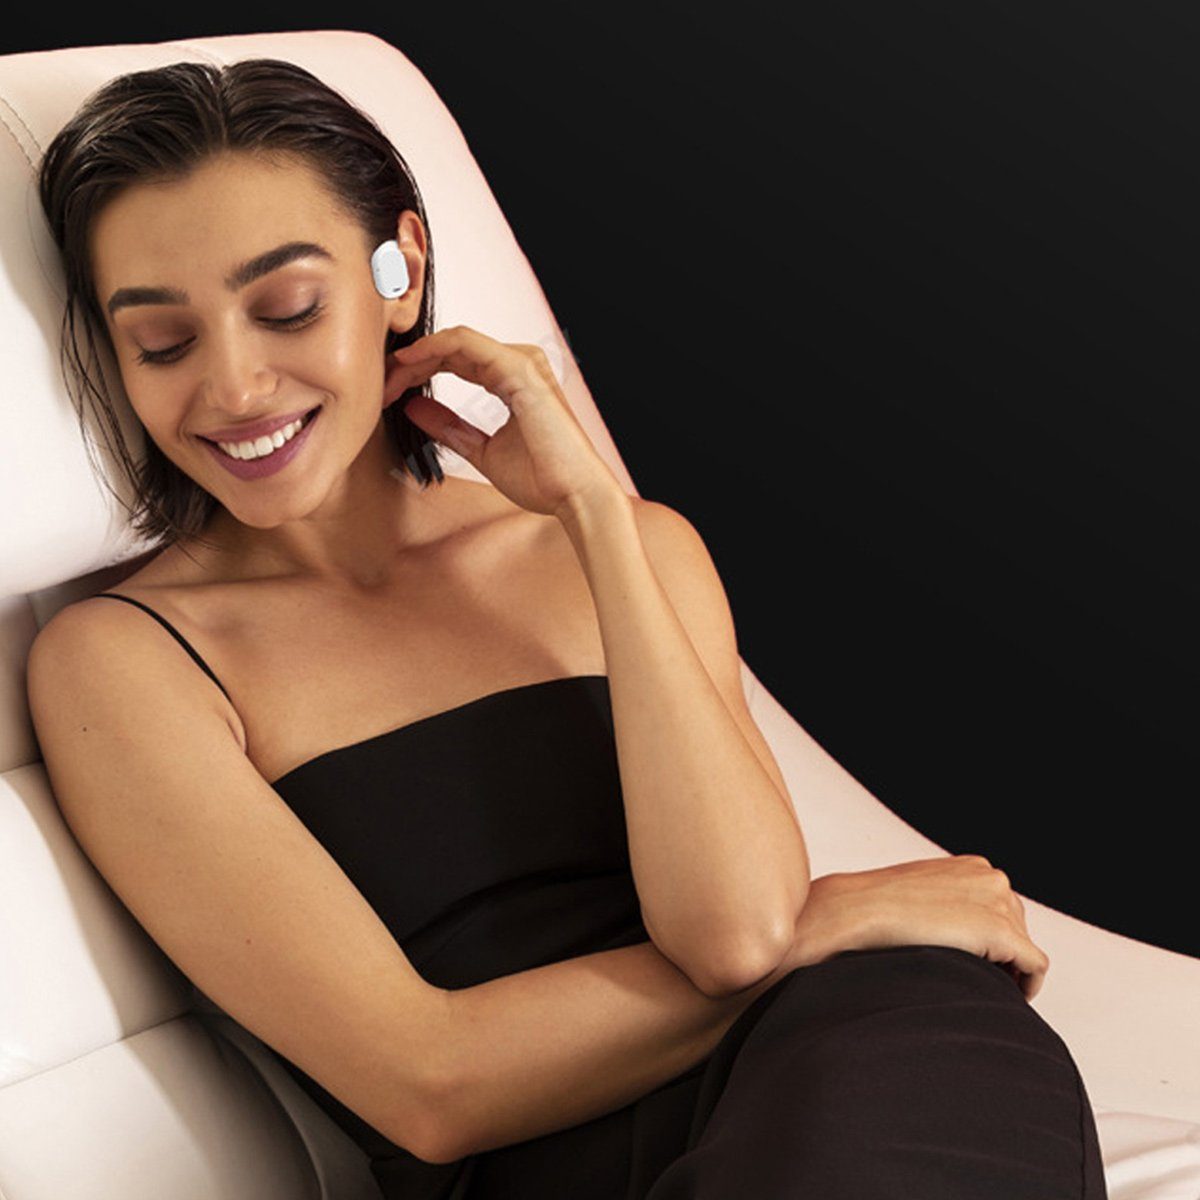 Kopfhörer Jormftte Knochenschall Ear-Clip Kopfhörer Bluetooth,Sport-Ohrring-Kopfhörer Weiß